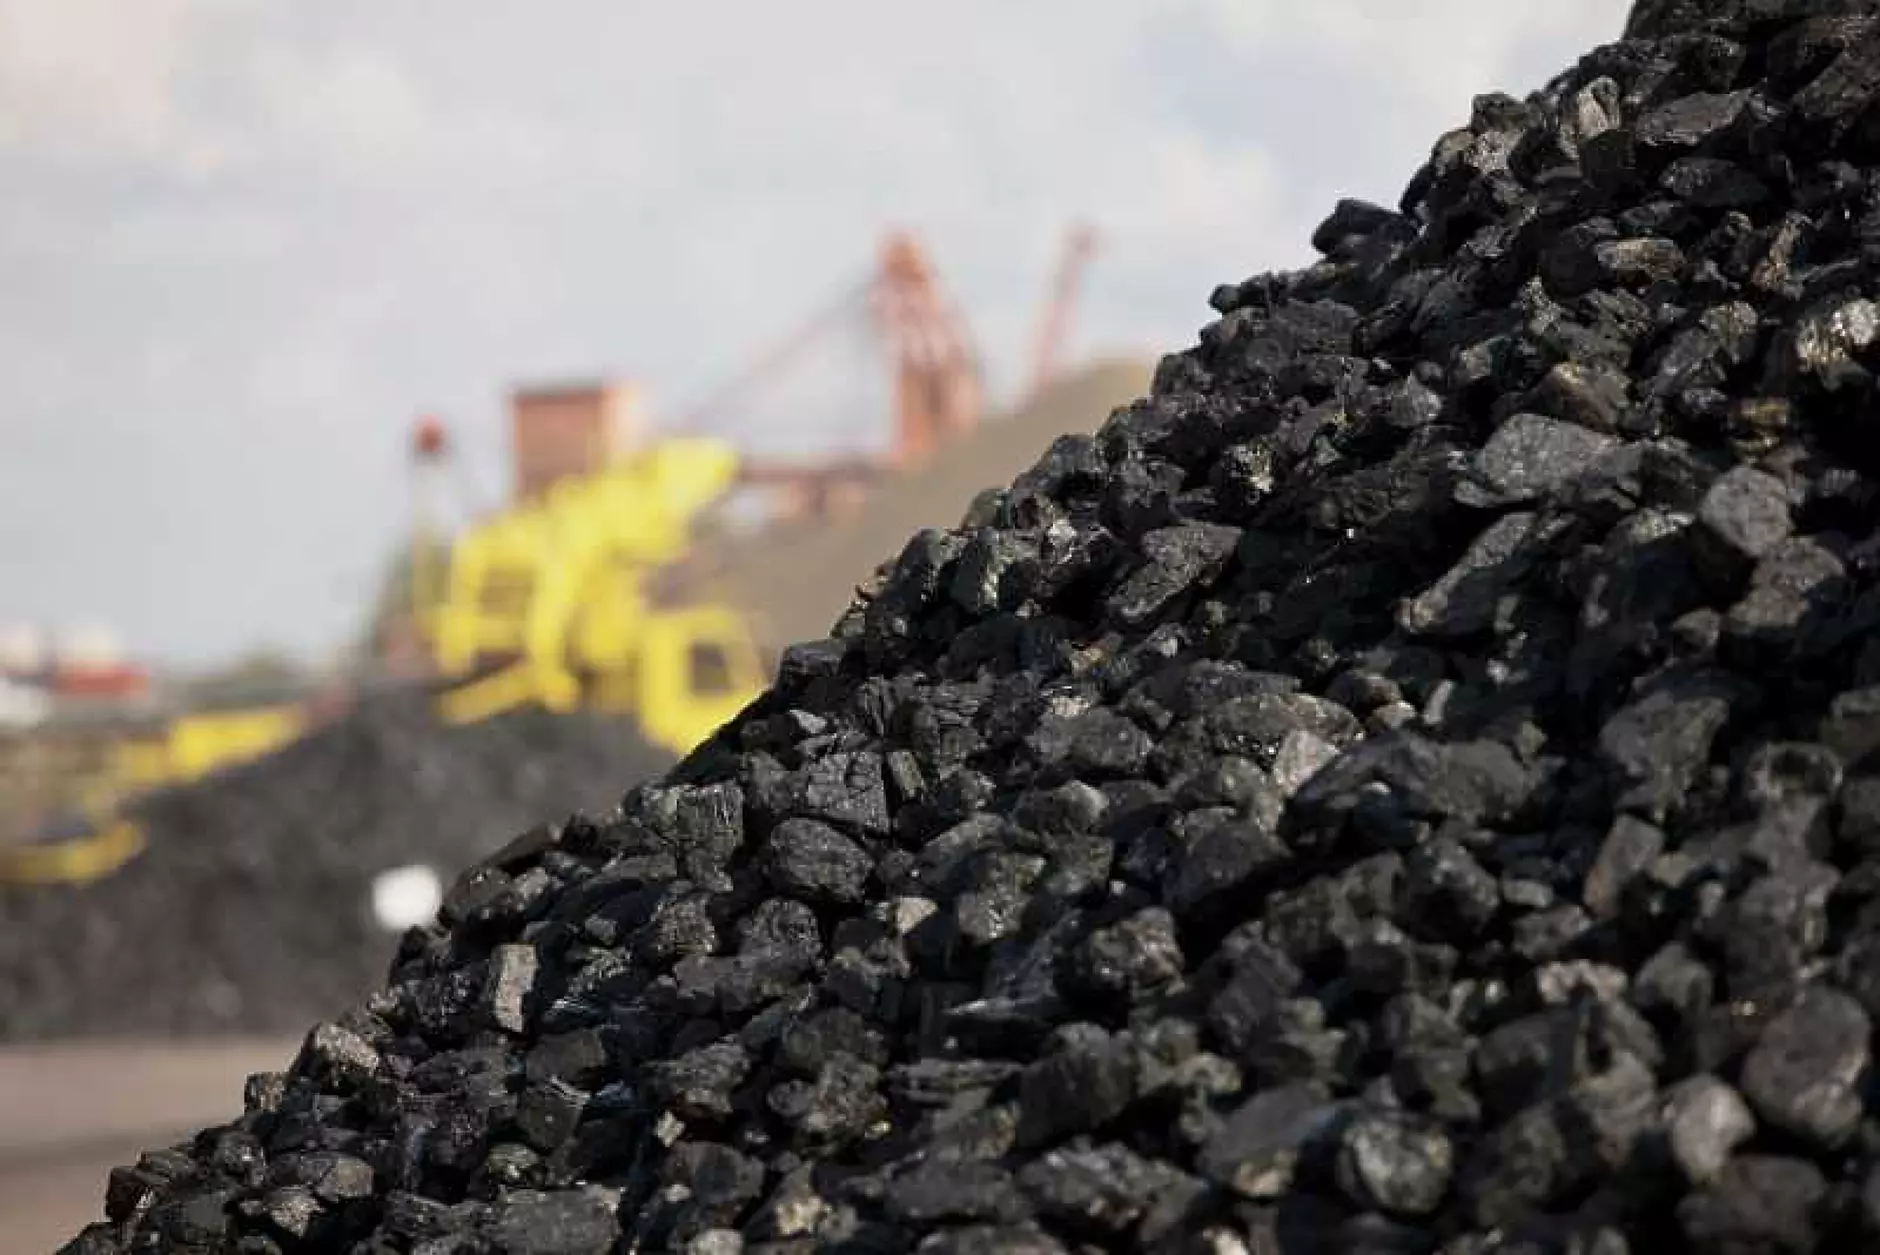 Потреблението на въглища миналата година чупи предишен световен рекорд 